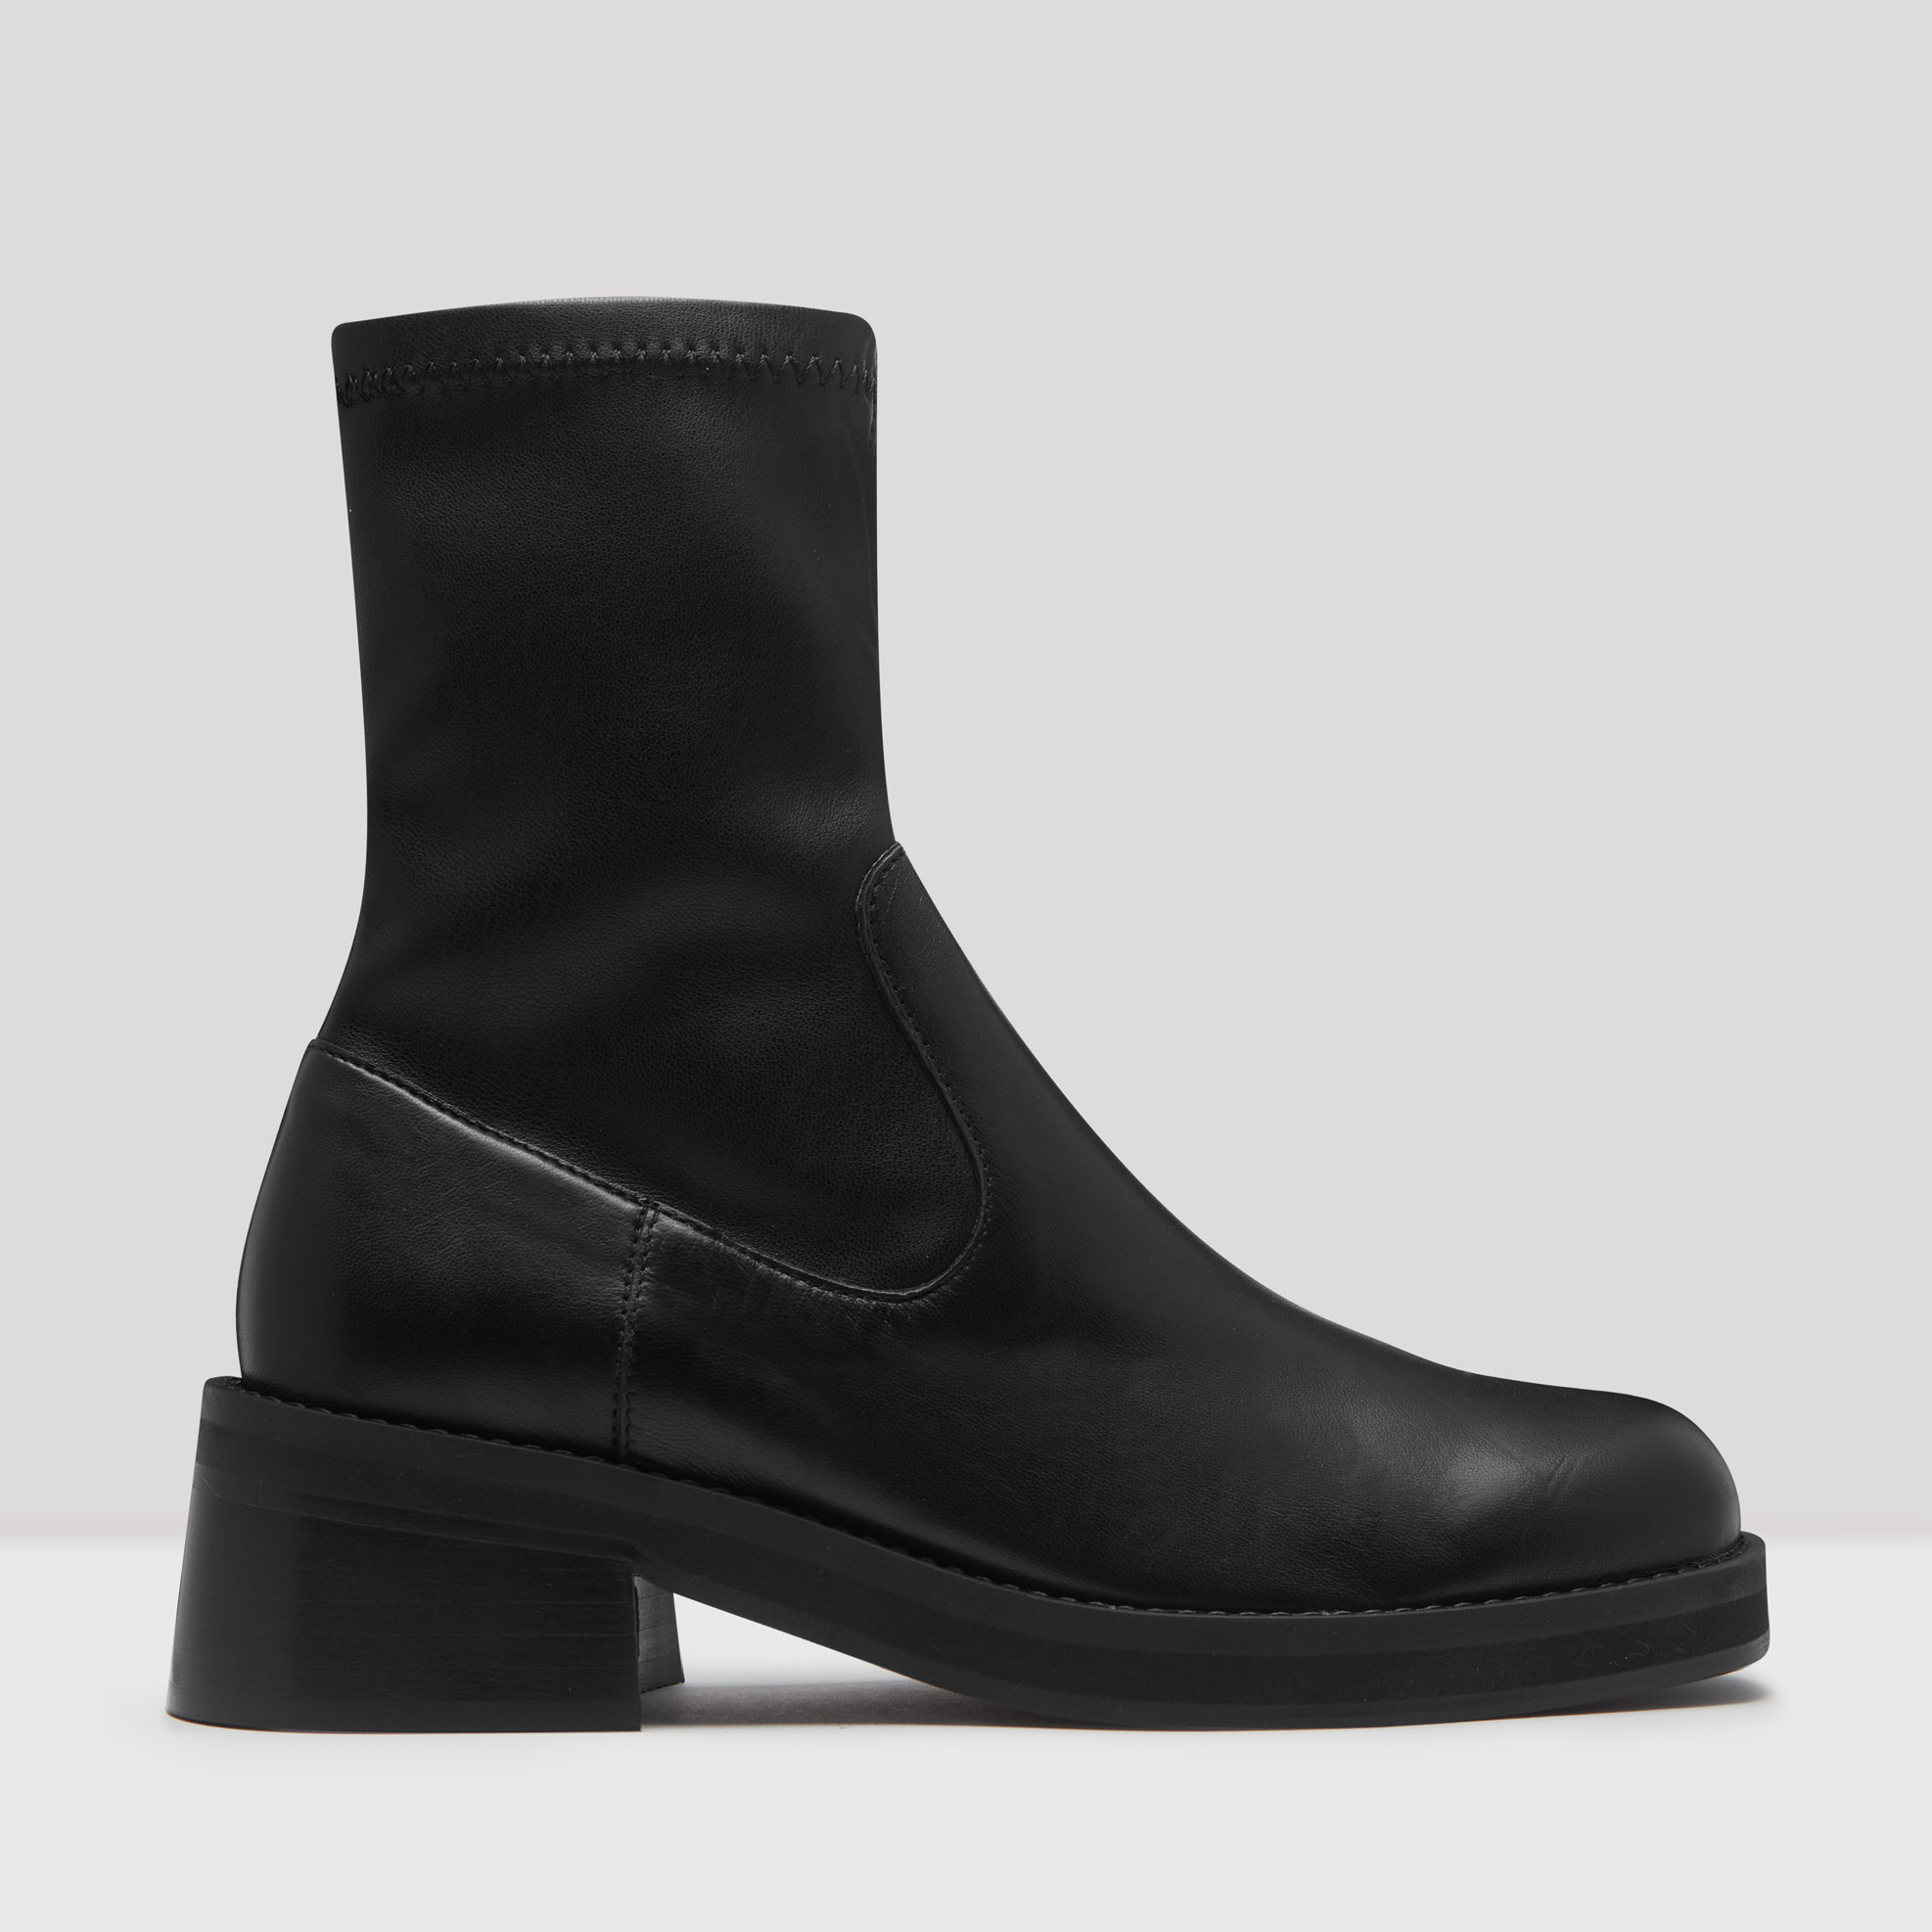 Miista Oliana Leather Boots - Black 